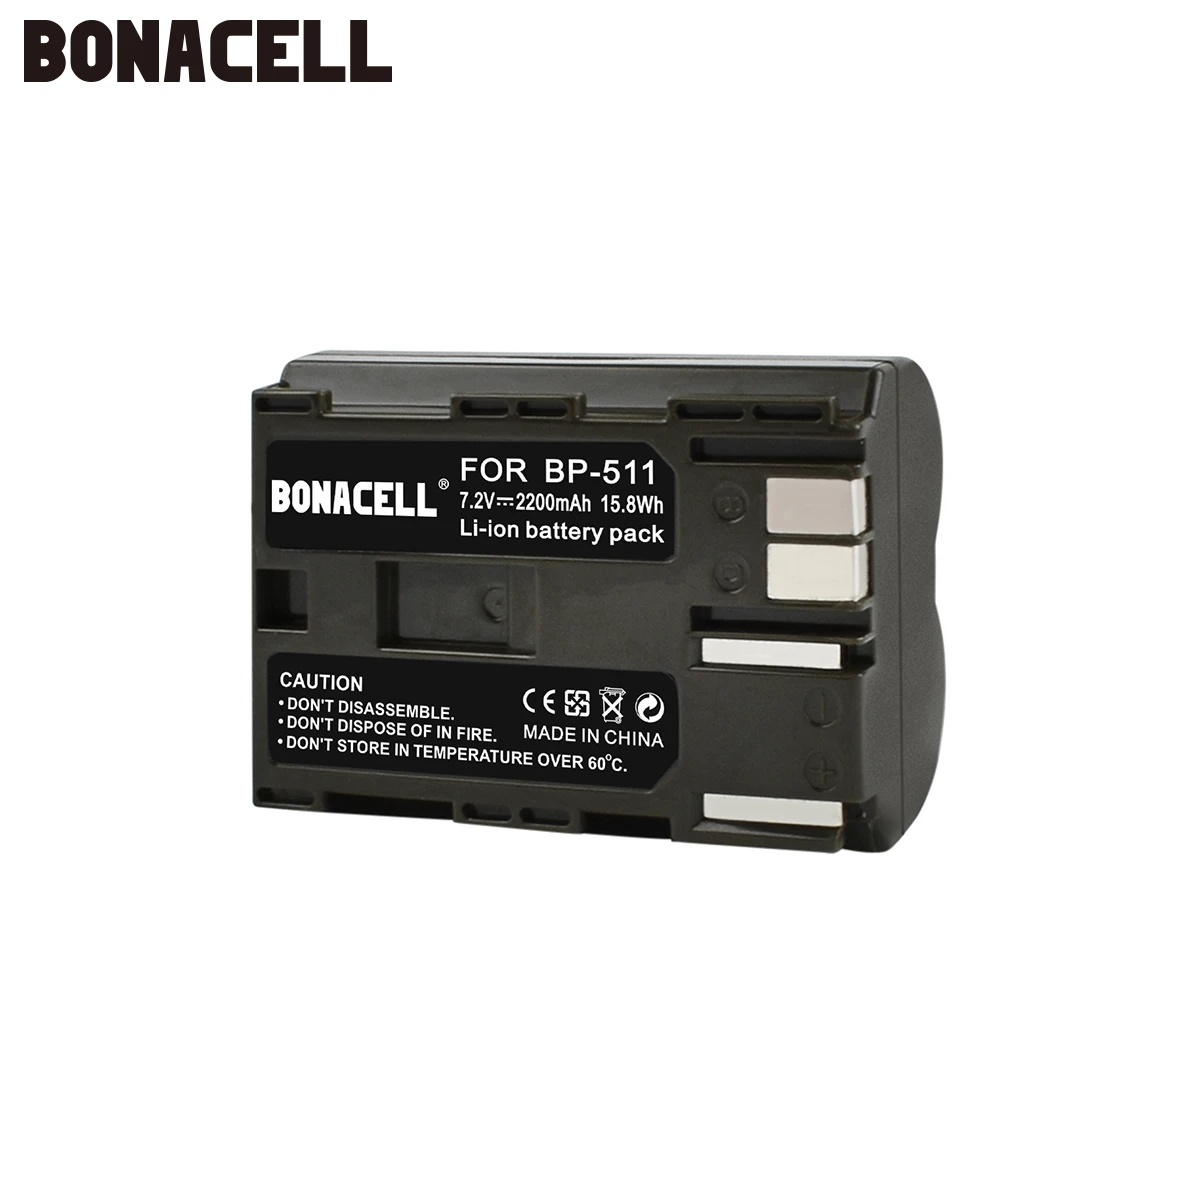 Bonacell 2200 мА/ч, BP-511 BP-511A BP 511A для Камера Батарея BP511 BP 511 для цифровой однообъективной зеркальной камеры Canon EOS 40D 300D 5D 20D 30D 50D 10D G6 L50